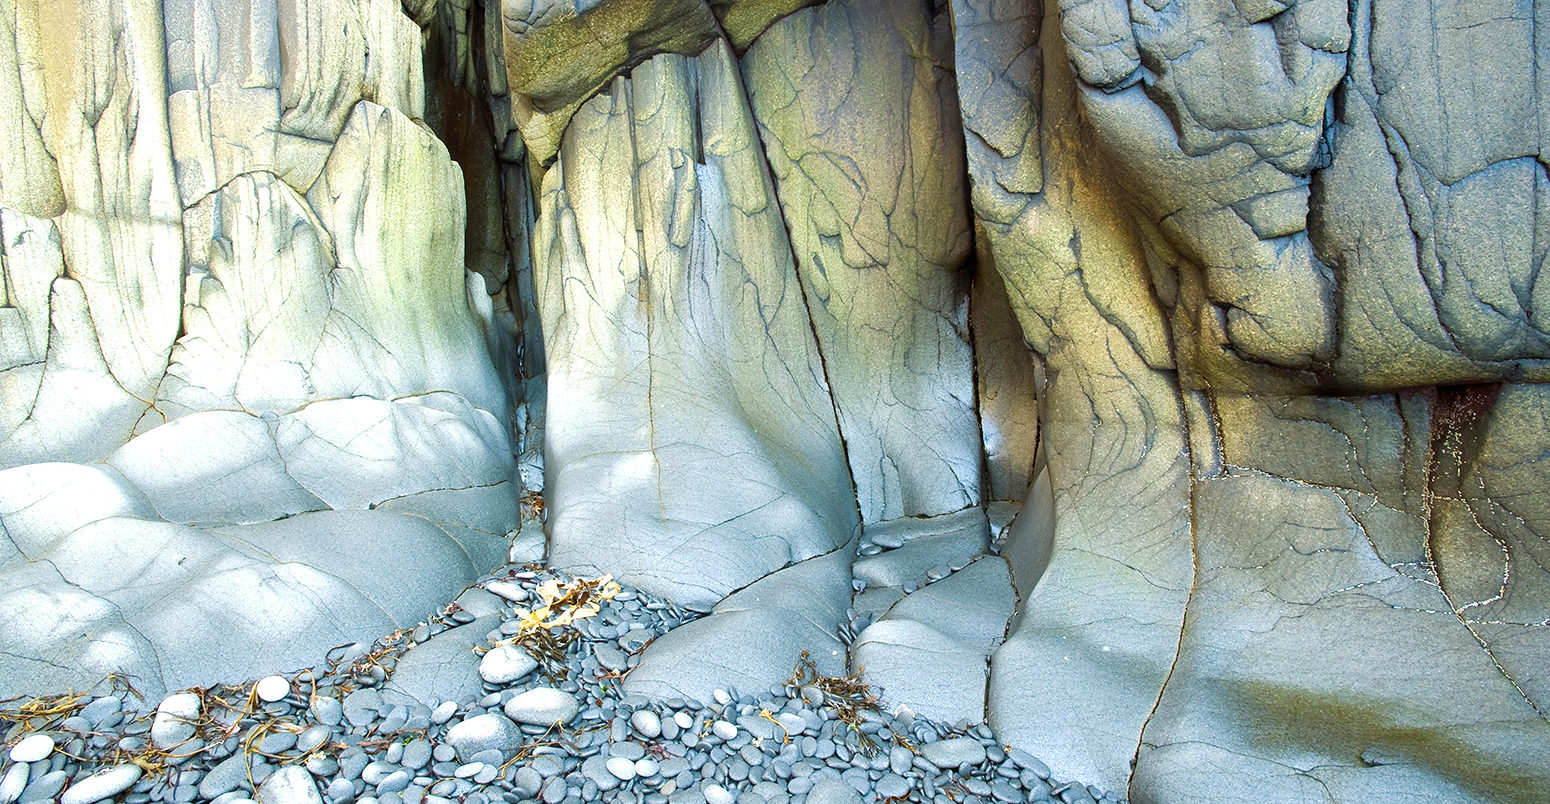 玄武岩岩石侵蚀细节,荆棘岛上,芬迪湾,加拿大的新斯科舍省。来源:加拿大所有照片除股票KCNR0T照片